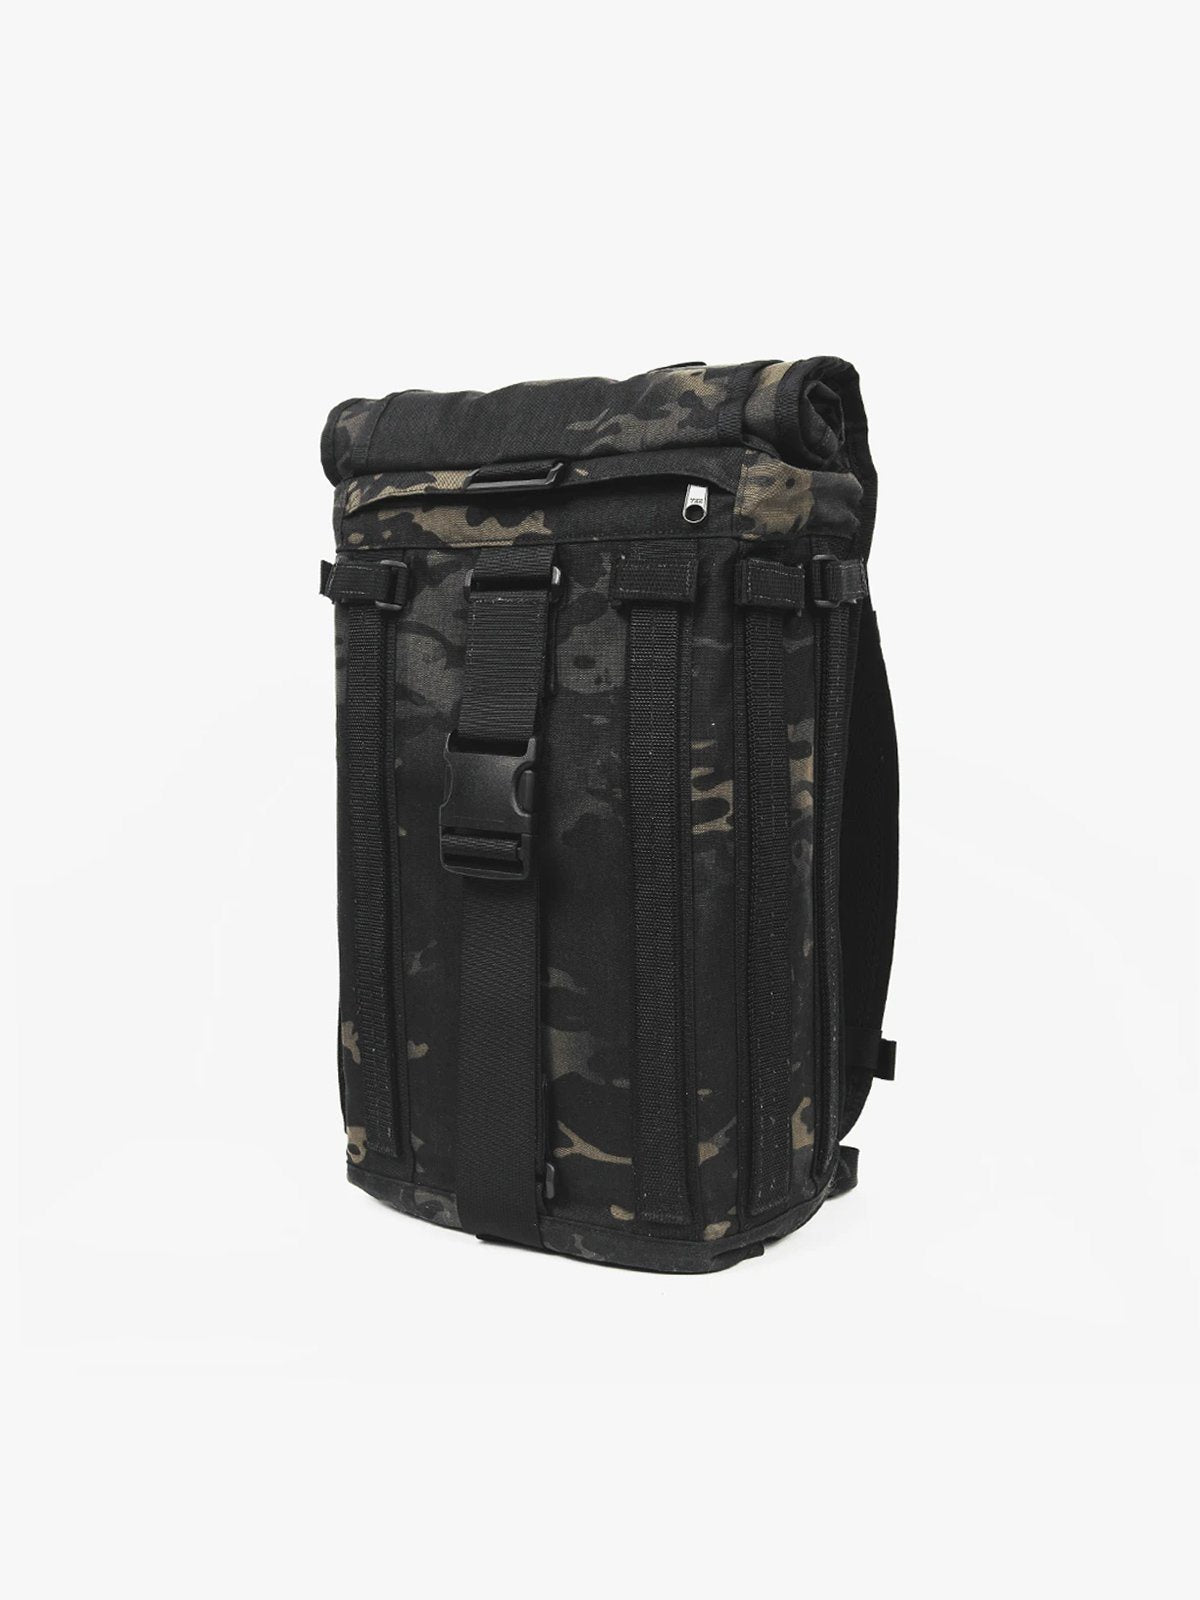 R6 Arkiv Field Pack 20L by Mission Workshop - Weatherproof Bags & Technical Apparel - San Francisco & Los Angeles - Construit pour durer - Garanti pour toujours